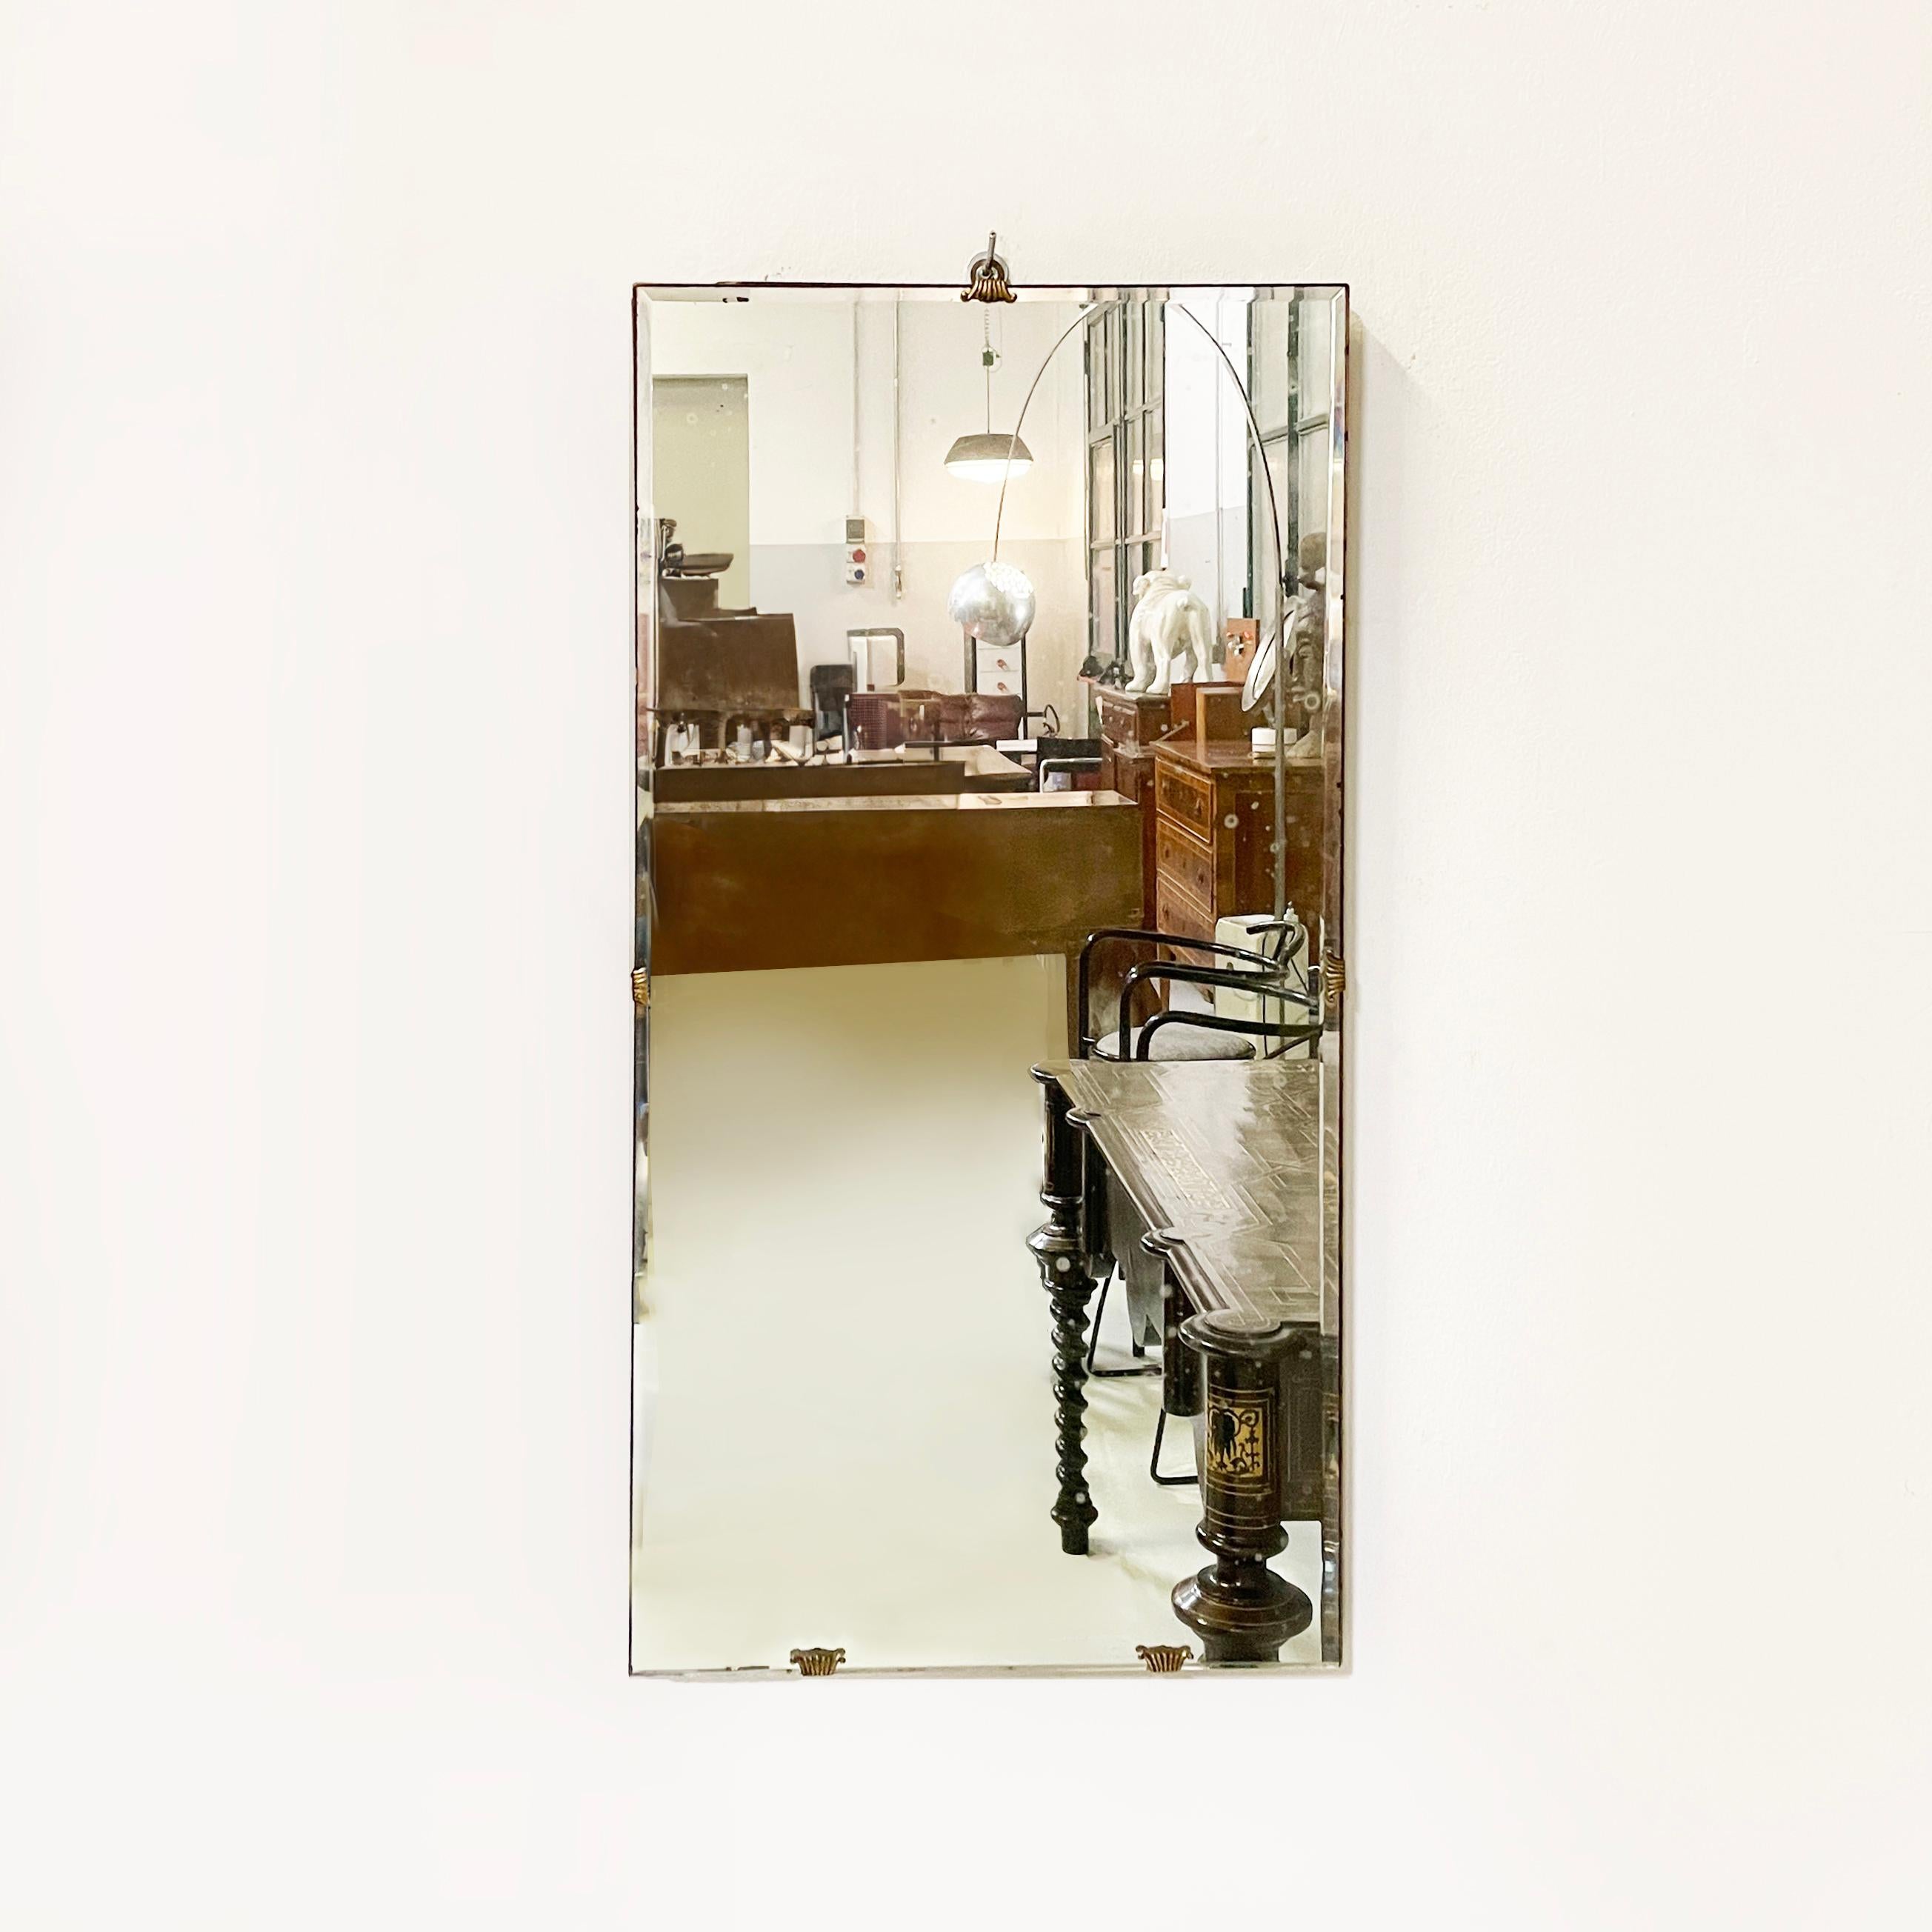 Miroir mural rectangulaire en bois et laiton bruni, Italie, milieu du siècle dernier, années 1960
Miroir mural de forme rectangulaire. La structure du miroir est en bois avec 5 crochets en laiton bruni, qui permettent au miroir de rester fixé à la